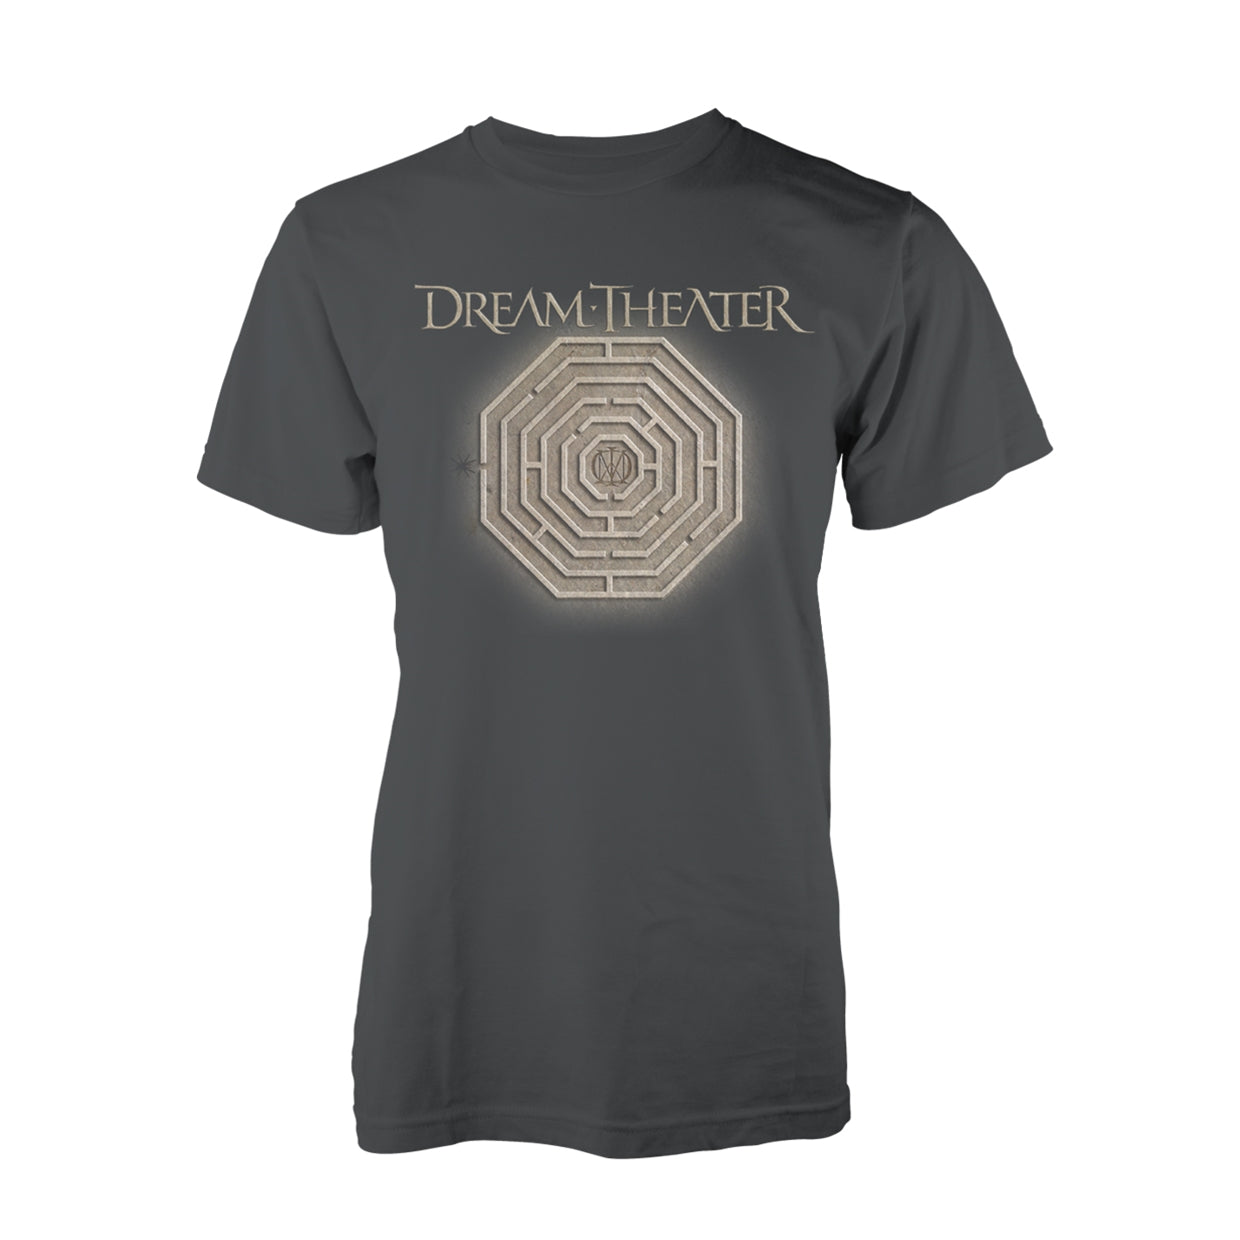 Dream Theater "Maze" T shirt